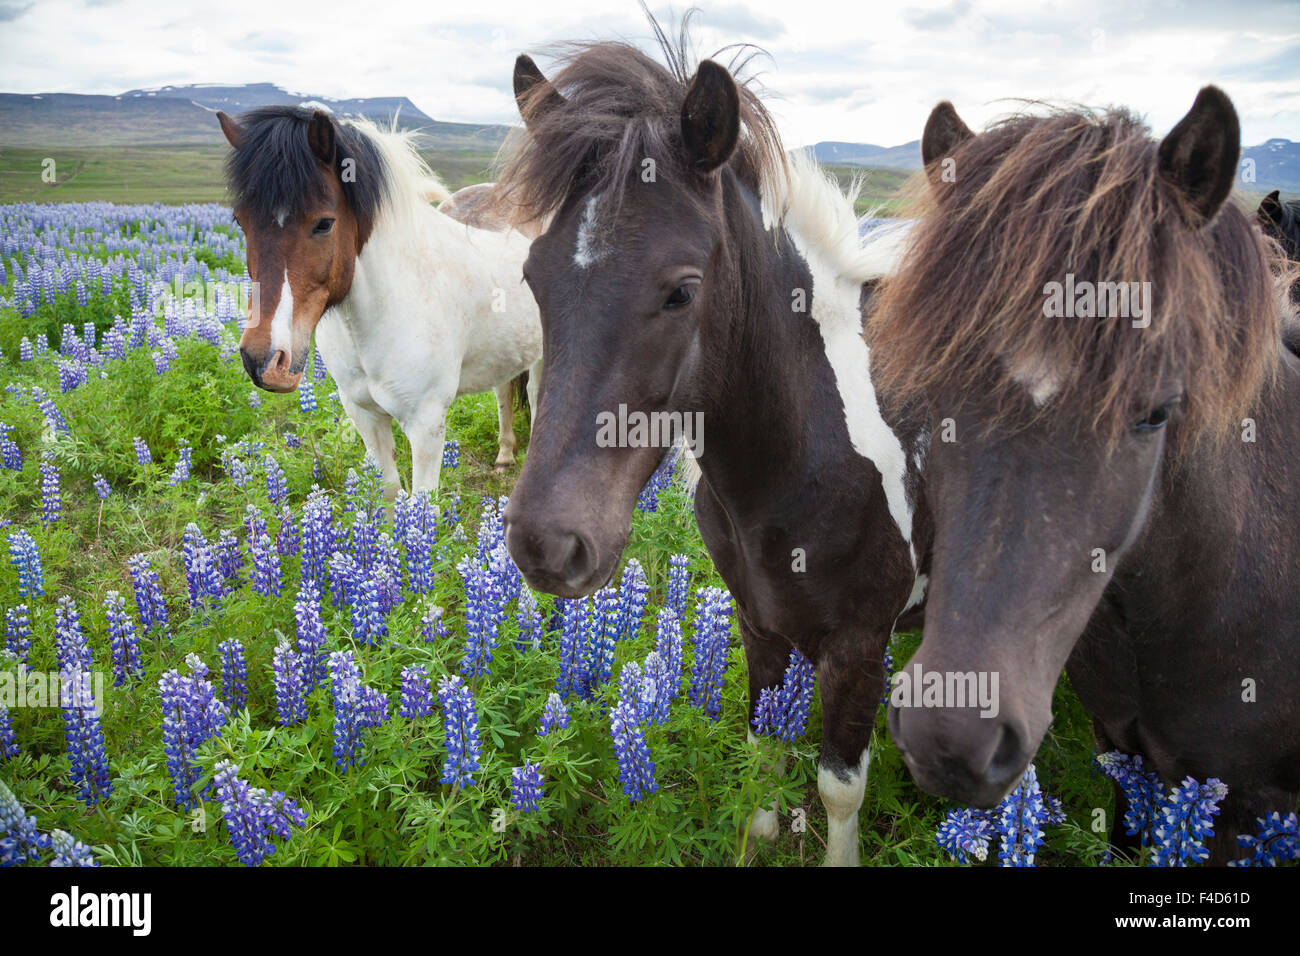 Isländische Pferde auf einer Wiese des Blauen Alaskan Lupinen, Csopak, Sao Martinho do Porto, Nordhurland Djupivogur, Island. Stockfoto